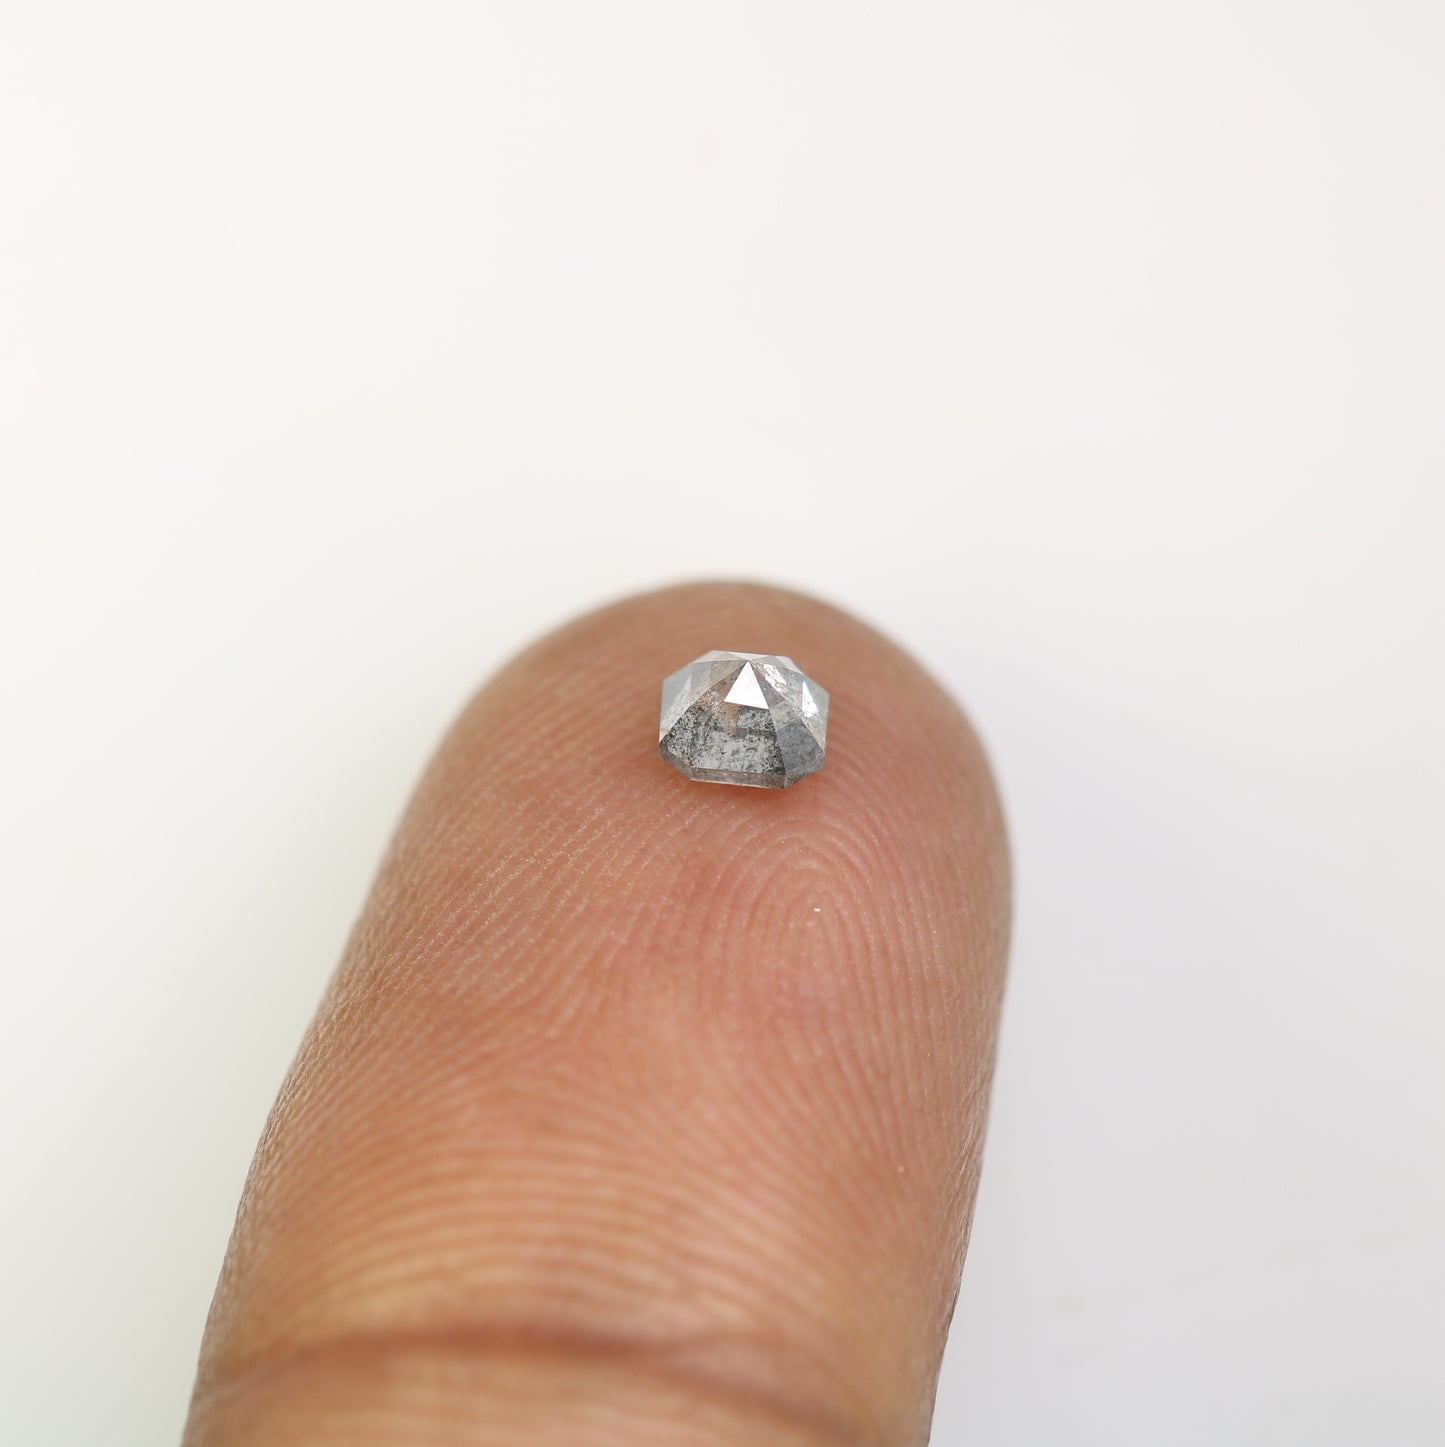 0.48 Carat Salt And Pepper Asscher Shape Natural Loose Diamond For Wedding Ring